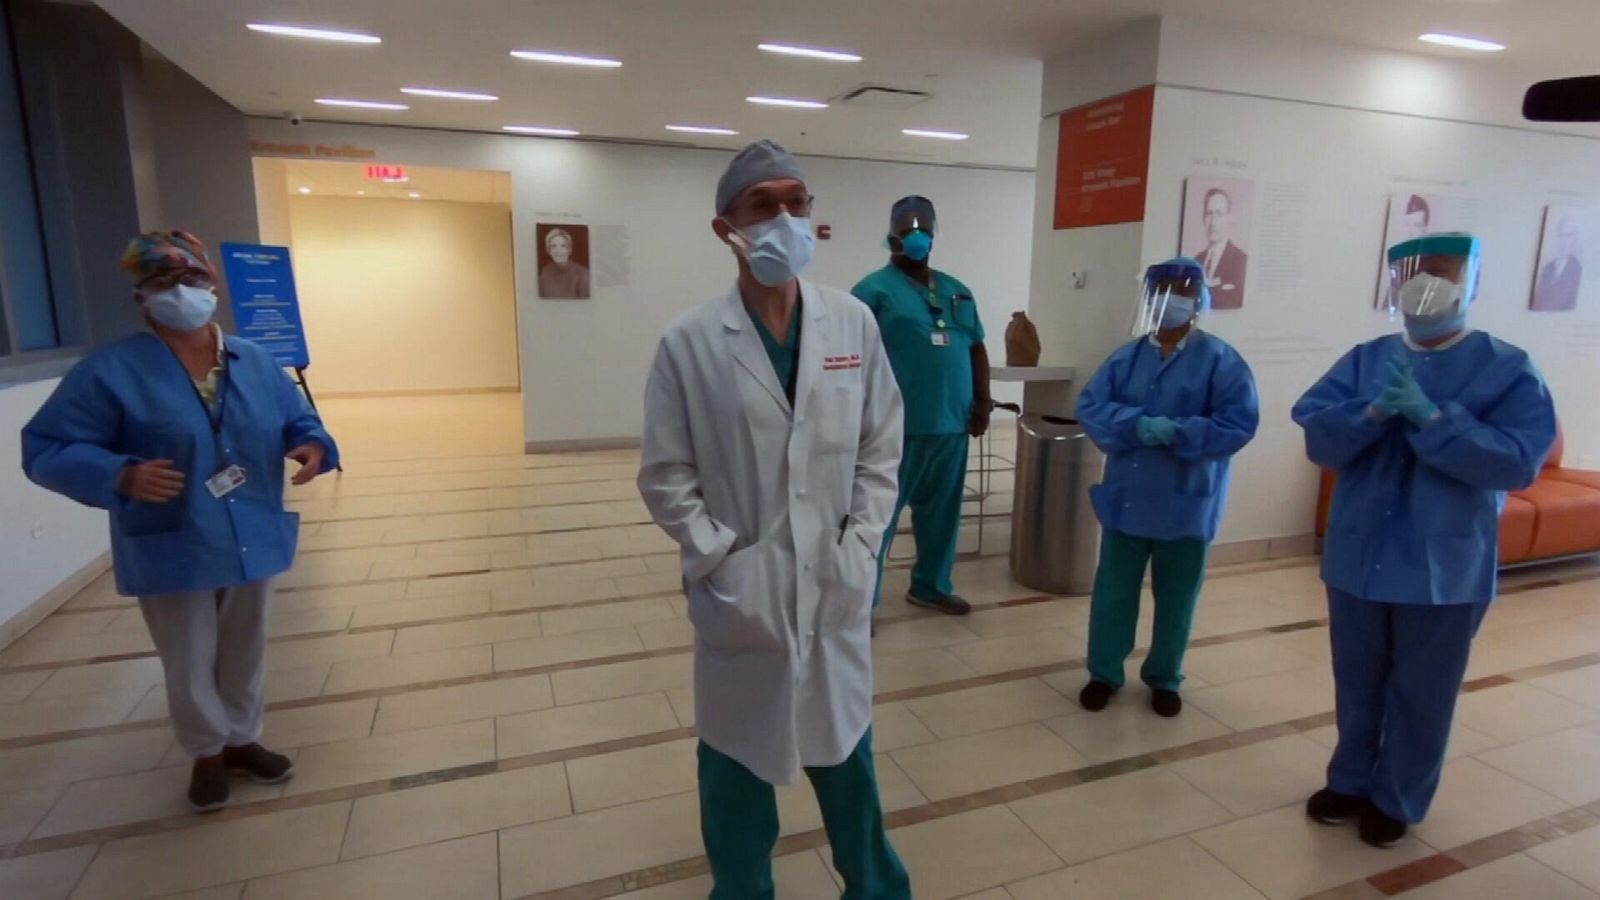 Chief surgeon at top NY hospital likens this week of coronavirus